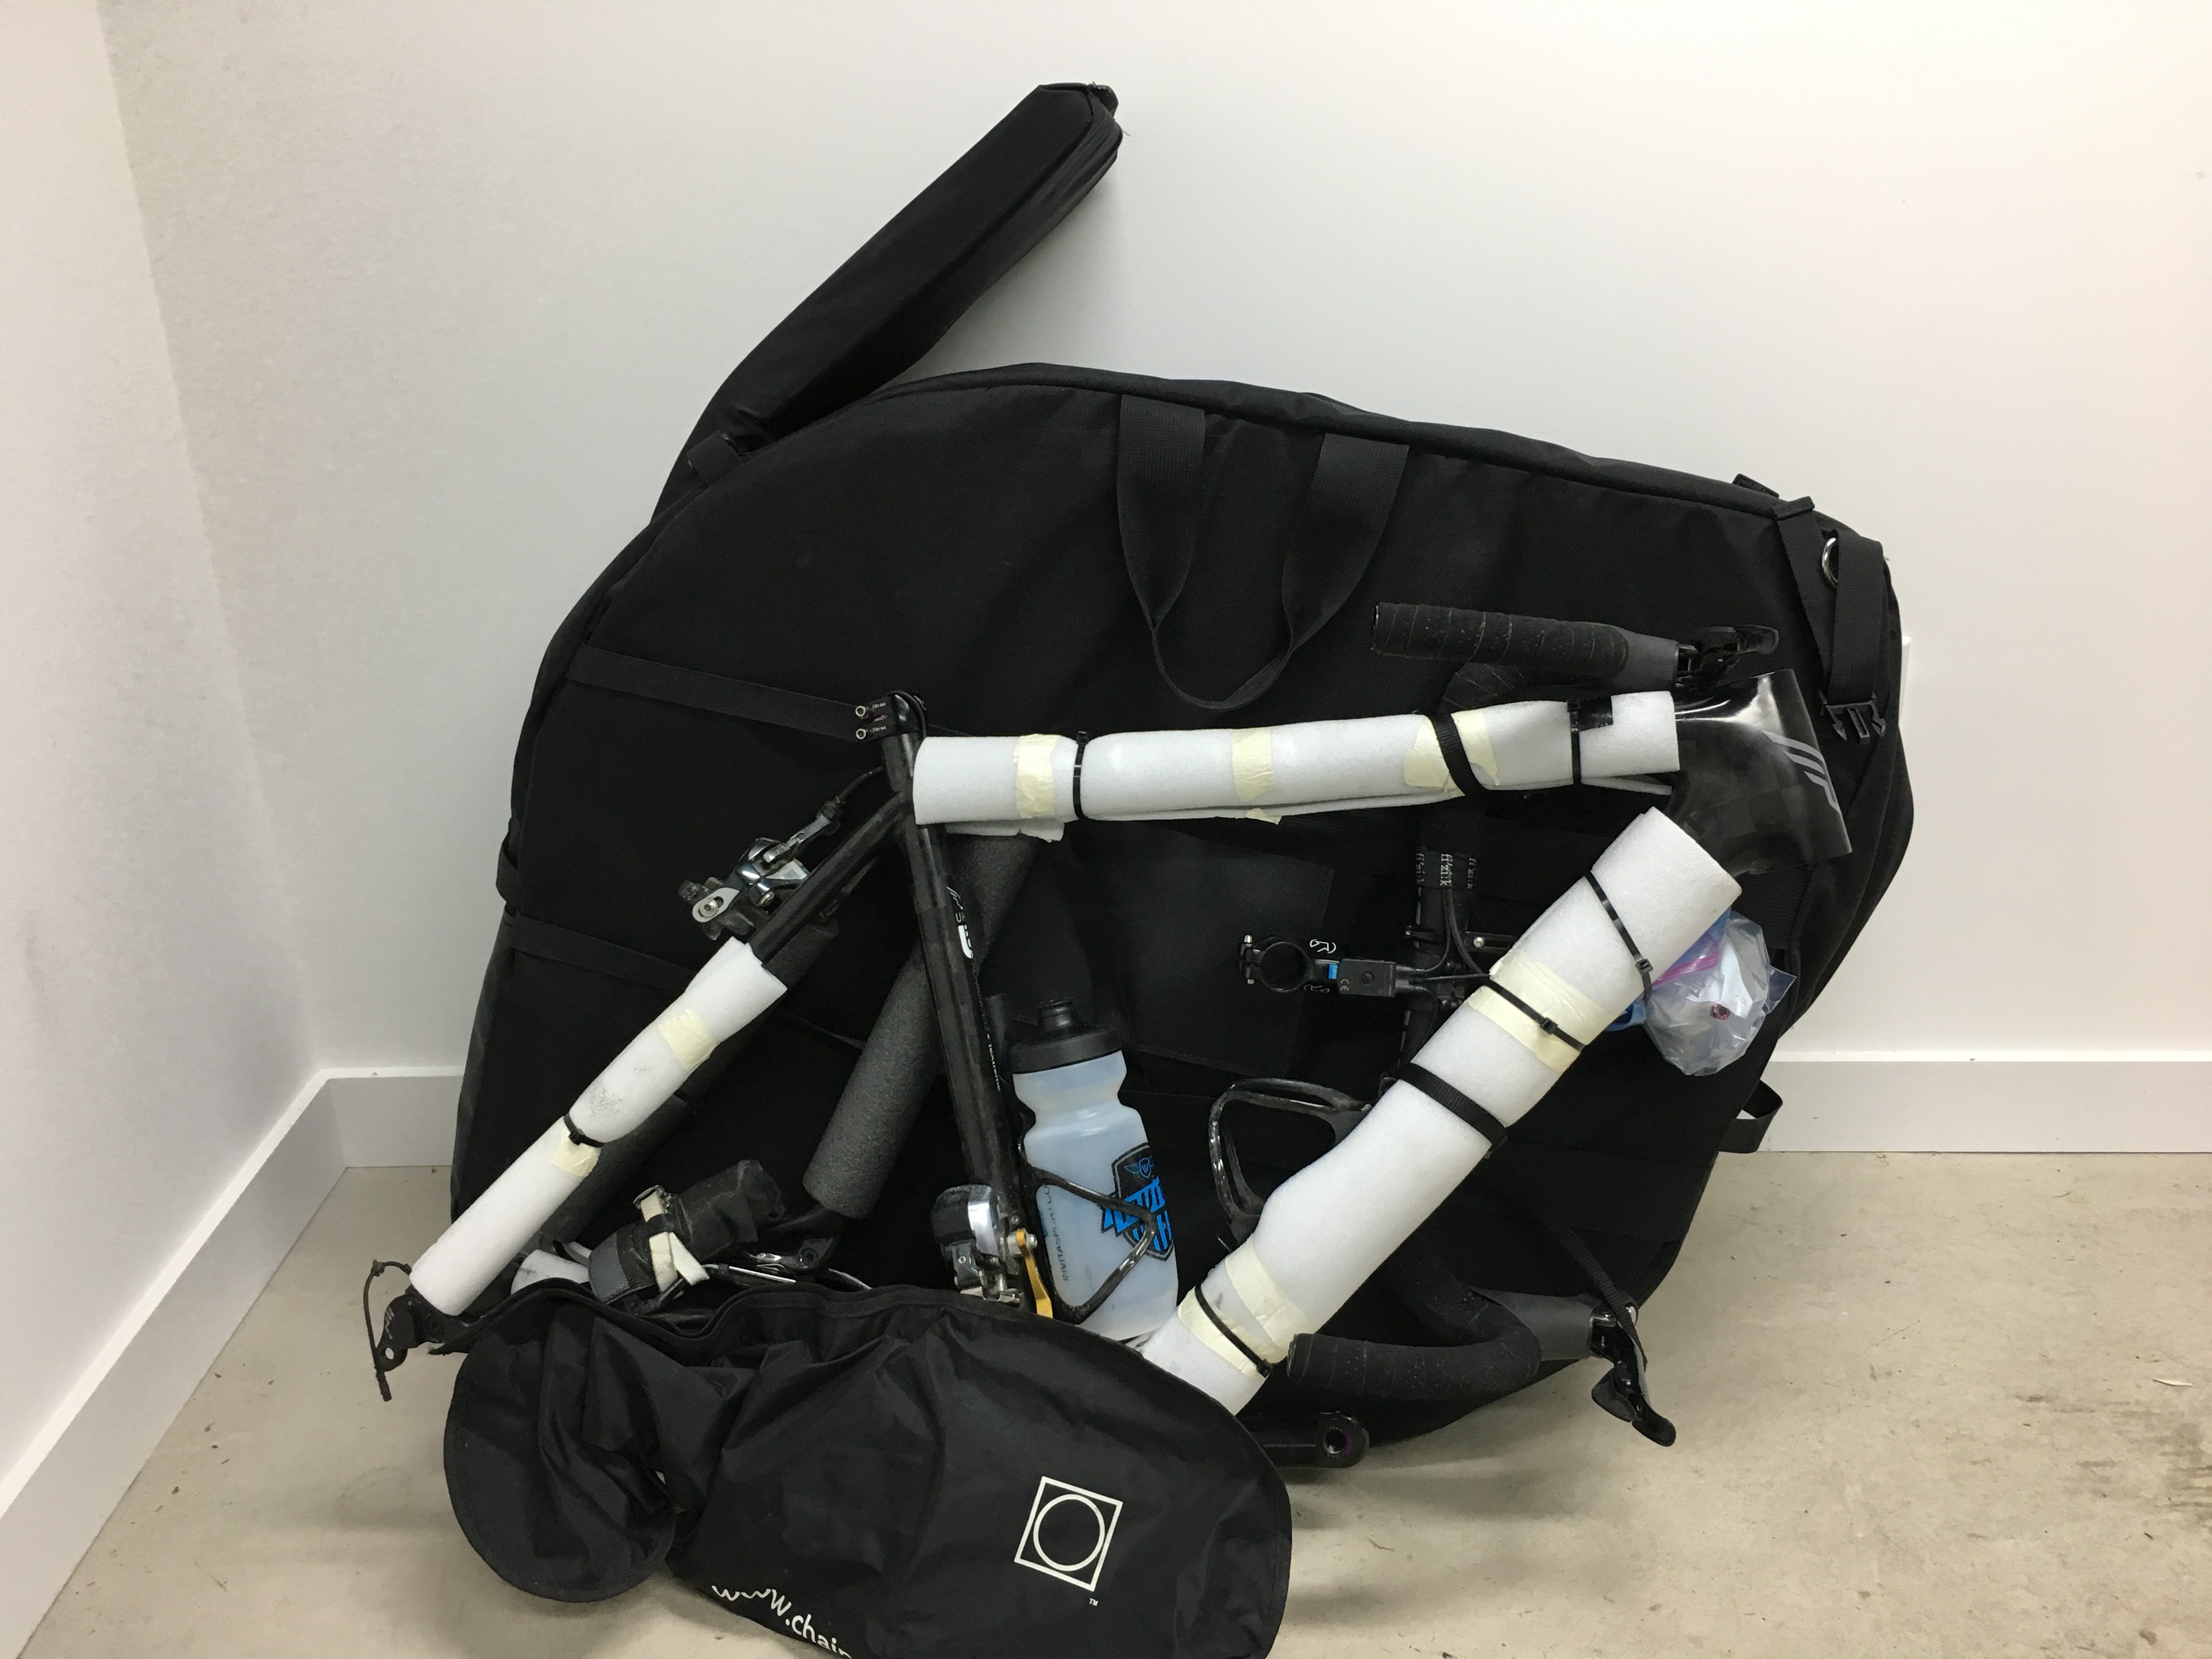 the airport ninja bike travel case